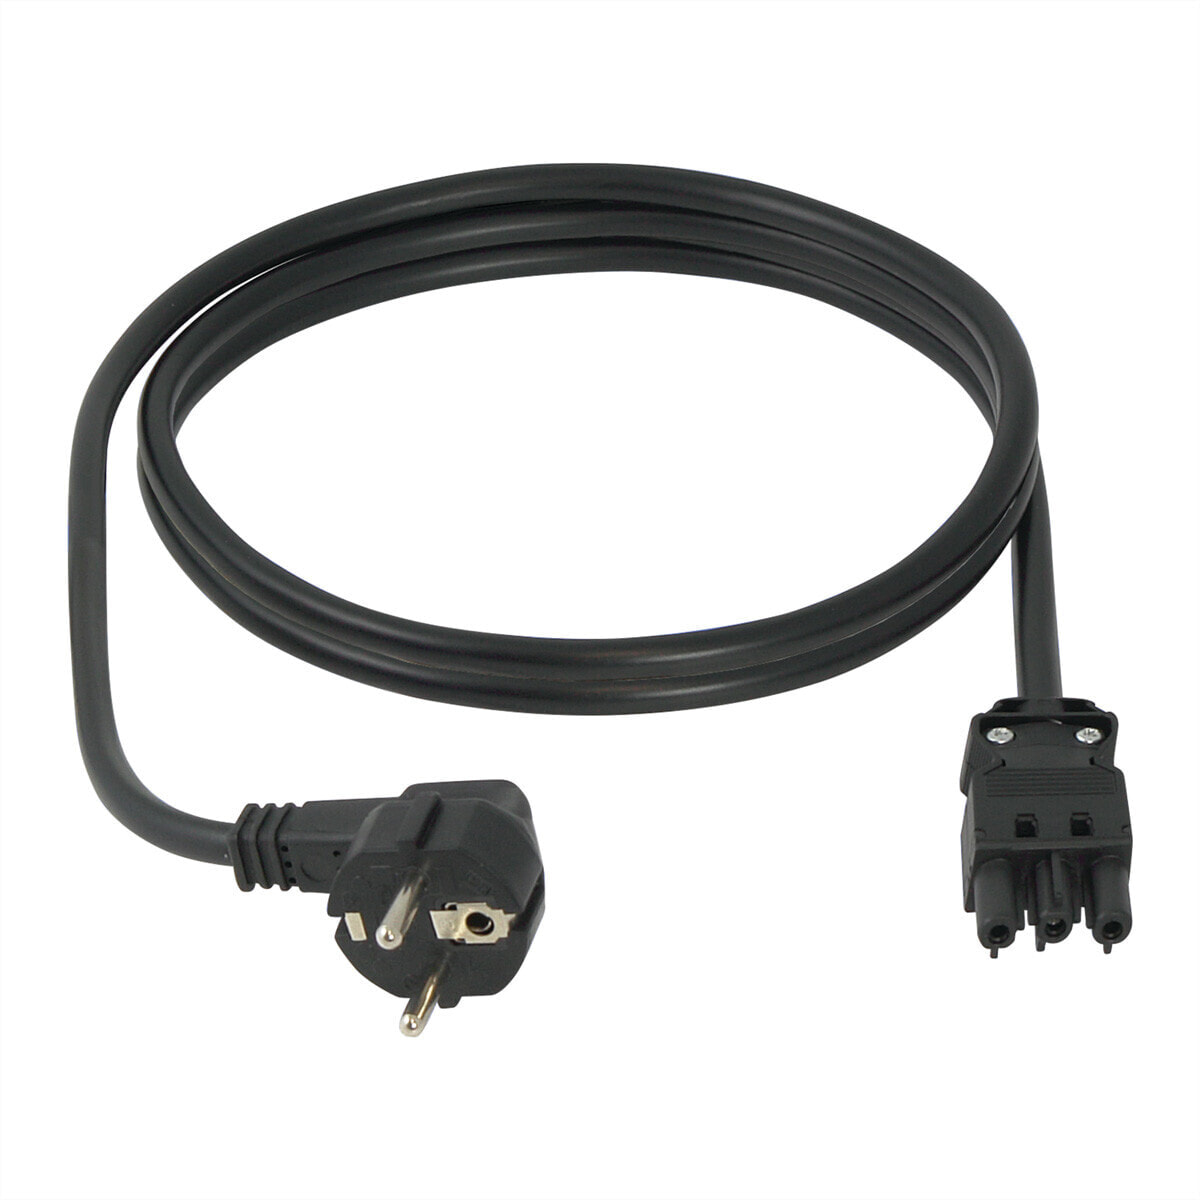 SCHROFF CABLE GST18-SCHUKO/UTE 2.5M - Cable